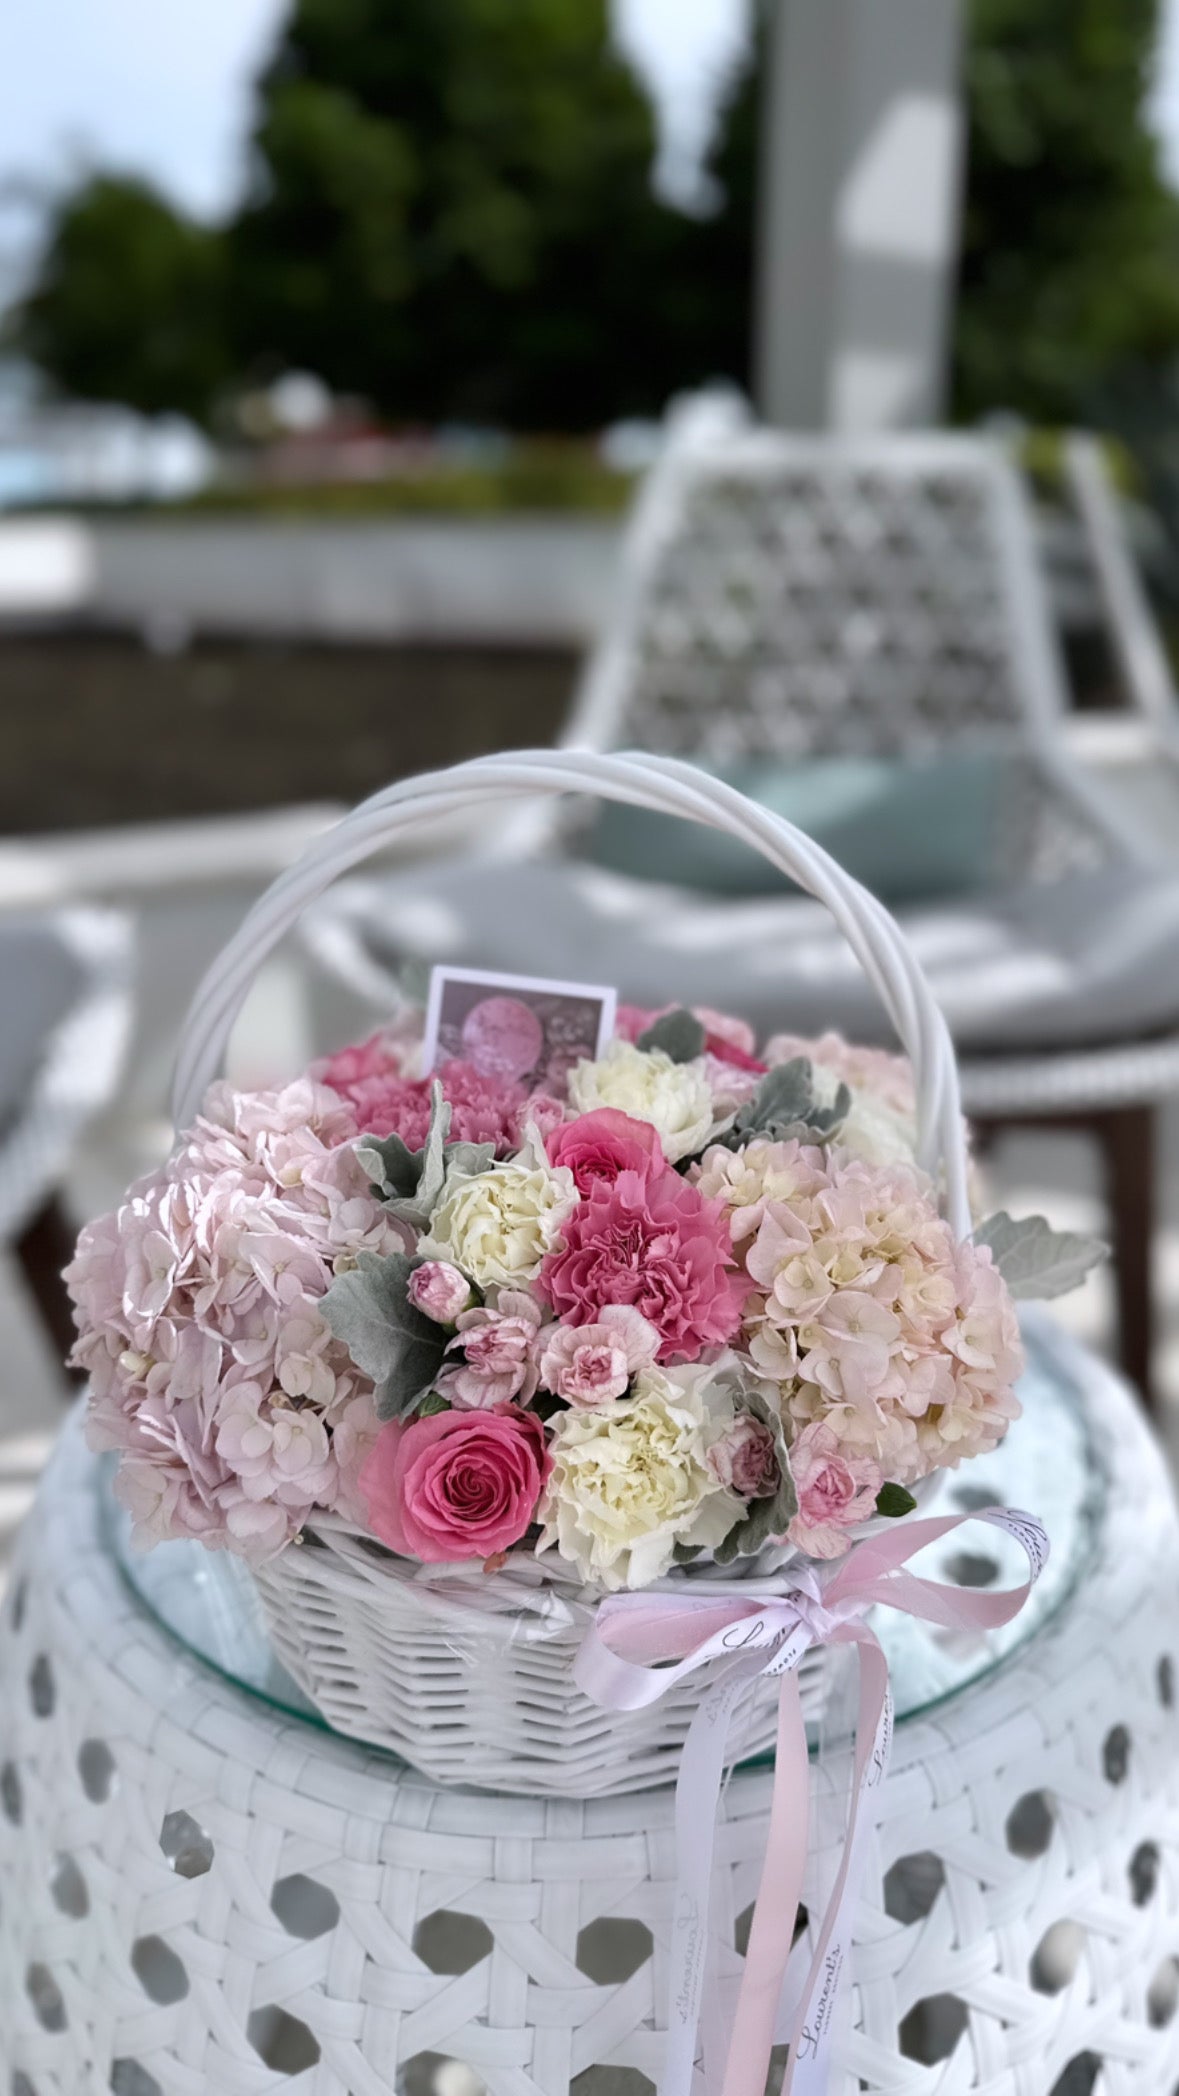 Flower basket “It’s a girl”